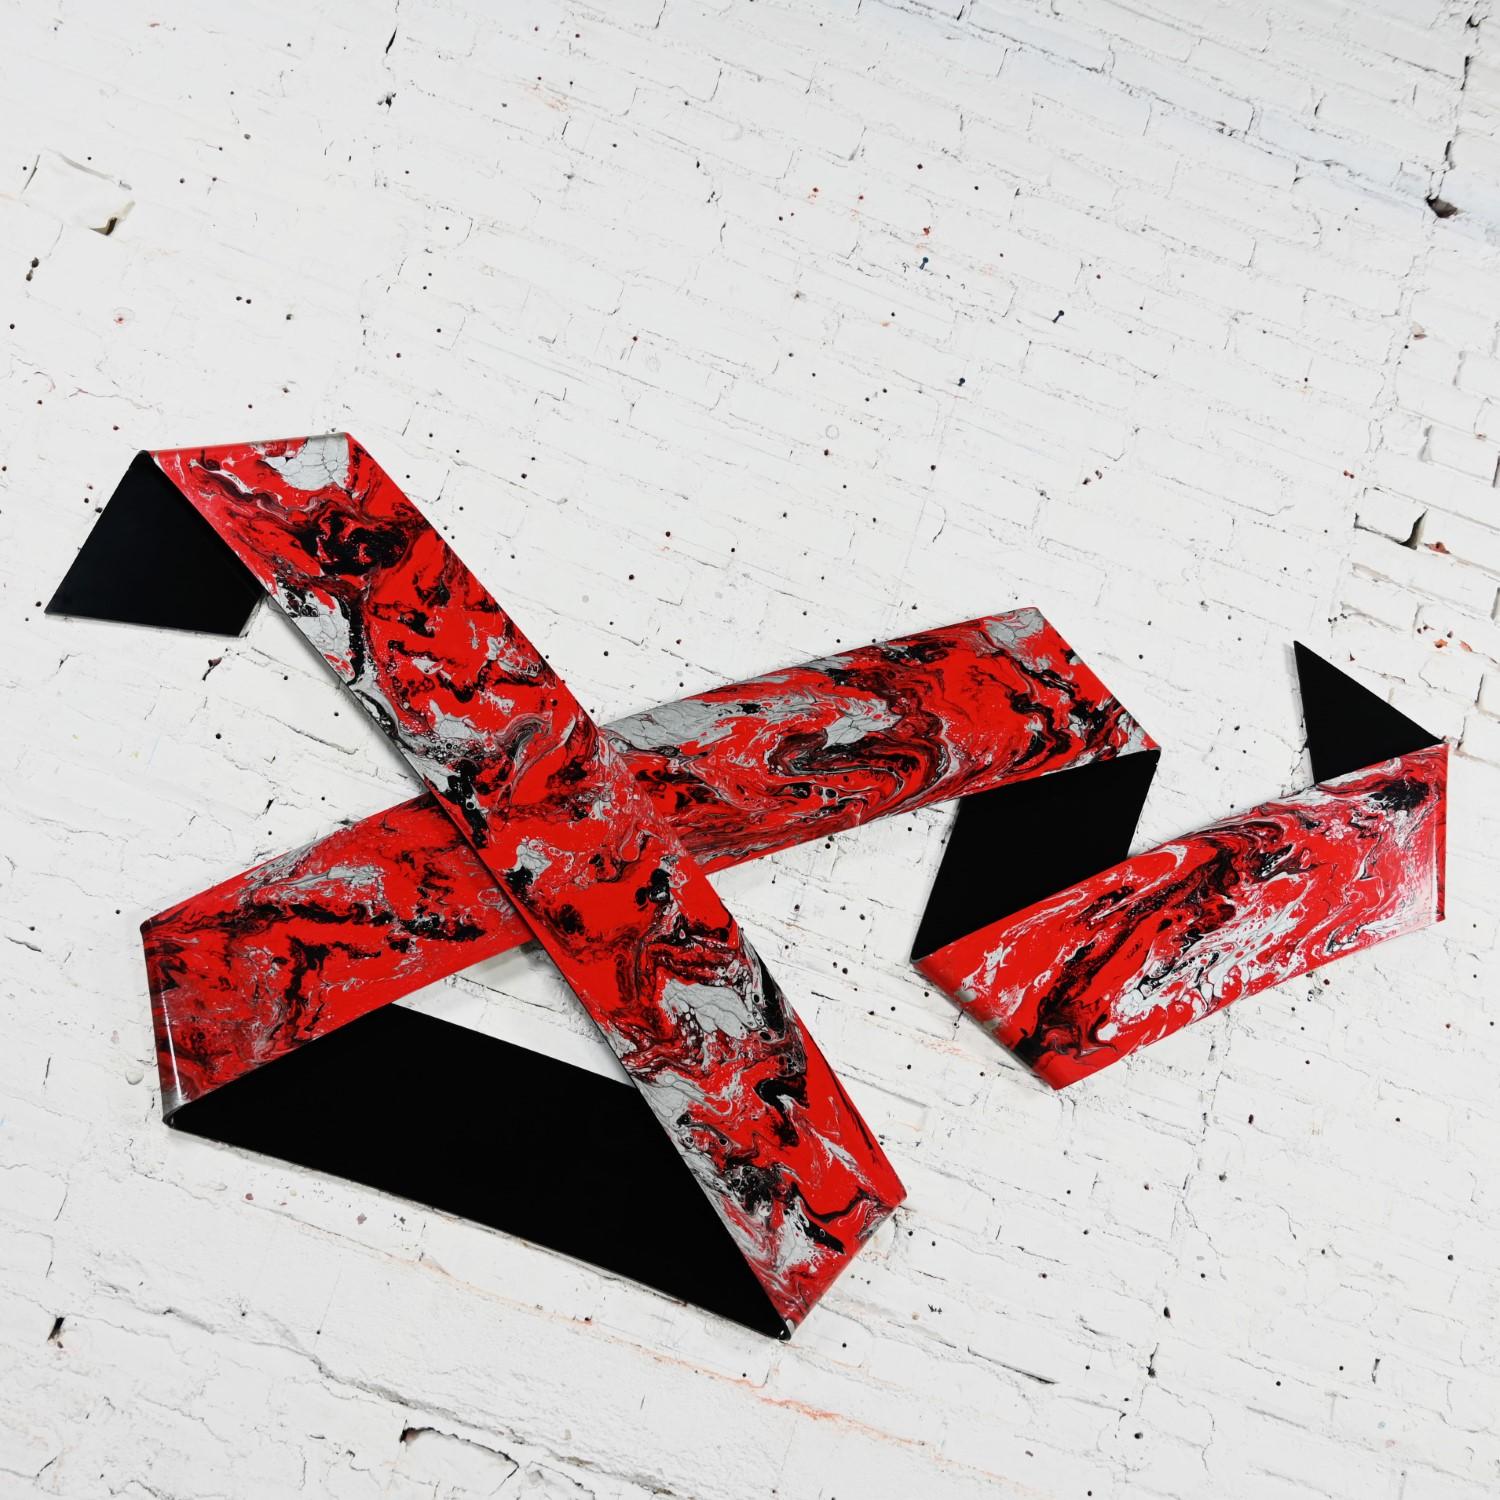 Phénoménal 1990 Abstrait Richard Mann plié plexiglas Ruban sculpture murale composée de peinture et de poudre rouge, noire et argent métallique. Byit, en gardant à l'esprit qu'il s'agit d'une pièce vintage et non pas neuve, qui présentera donc des